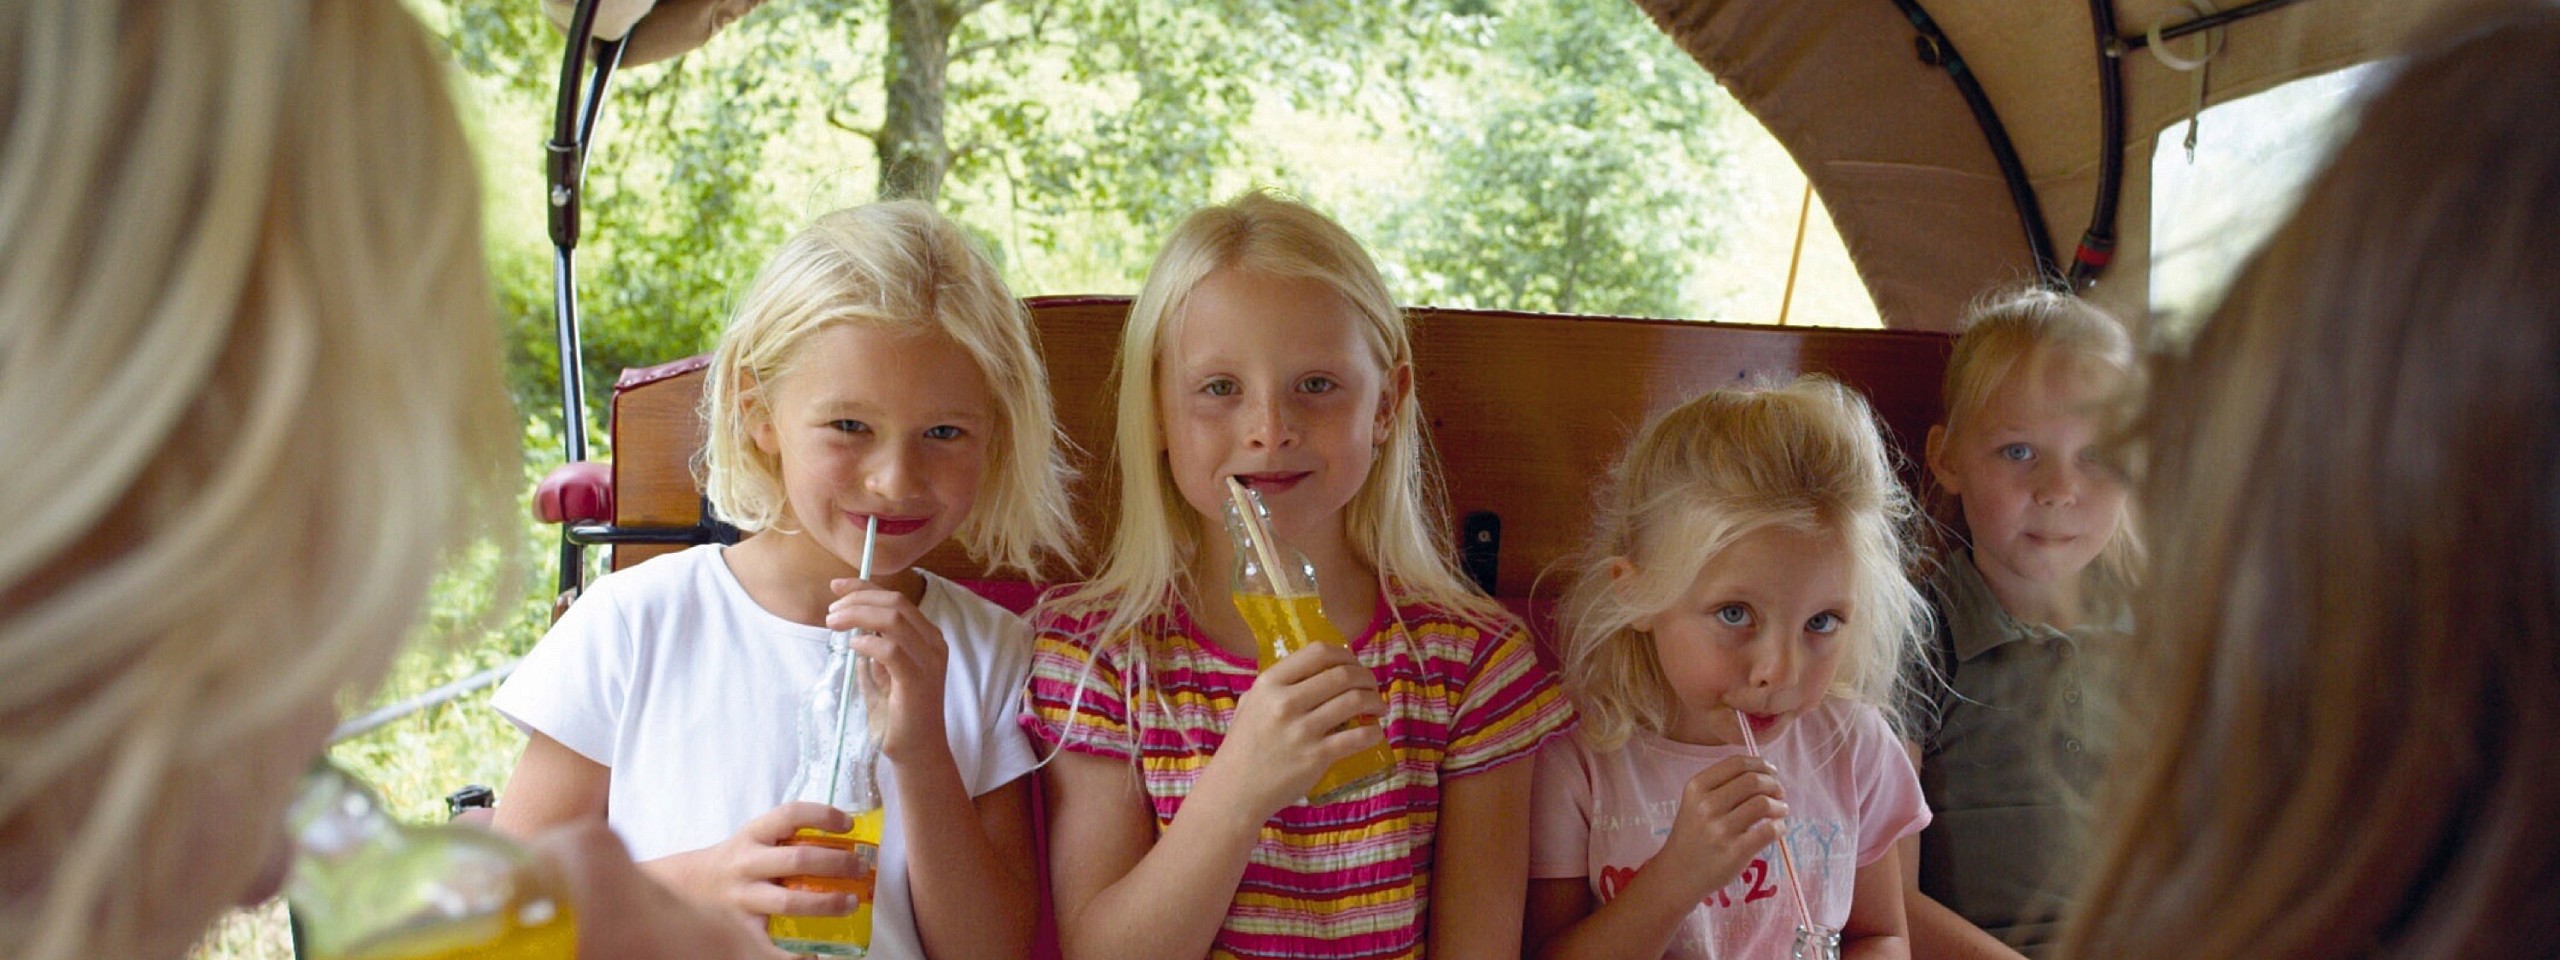 Kinder trinken in einem Wagen aus einer Flasche nahe dem Hotel mit Arrangements im Schwarzwald.